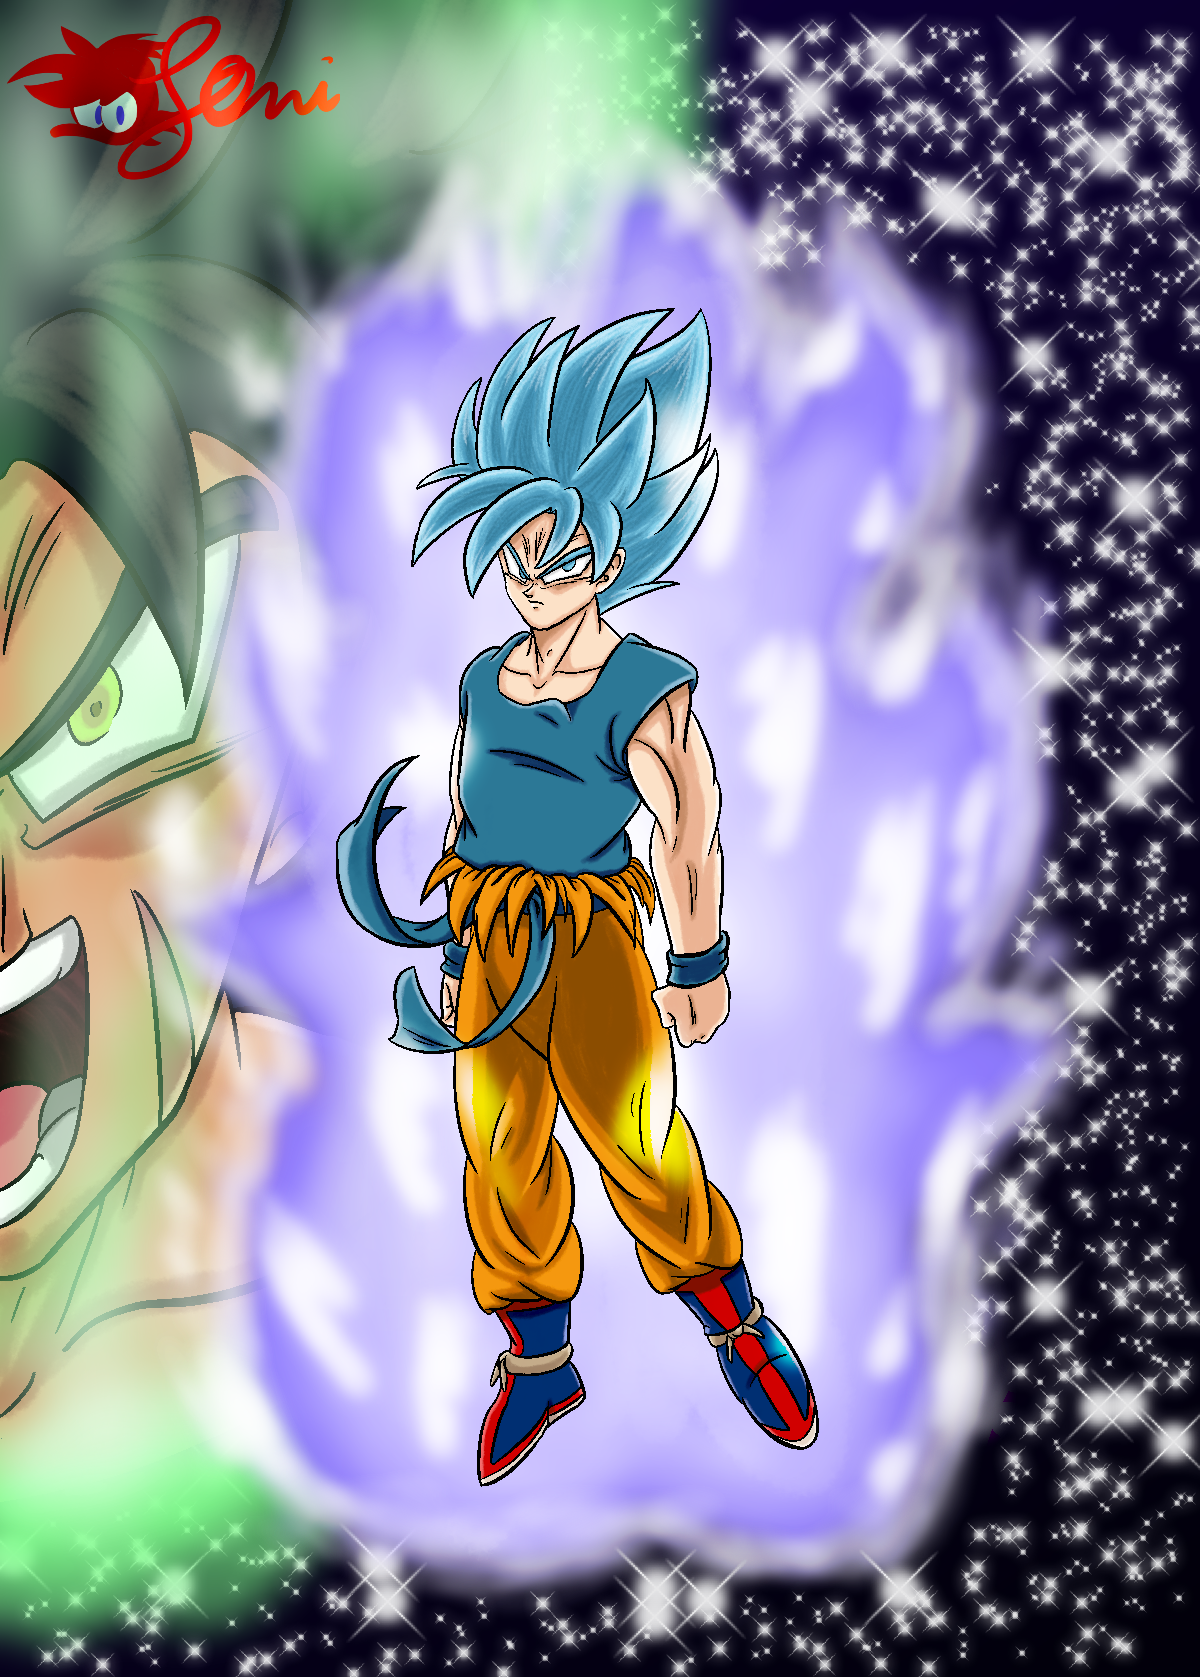 Goku Super Sayan 2 by YennK999 on DeviantArt